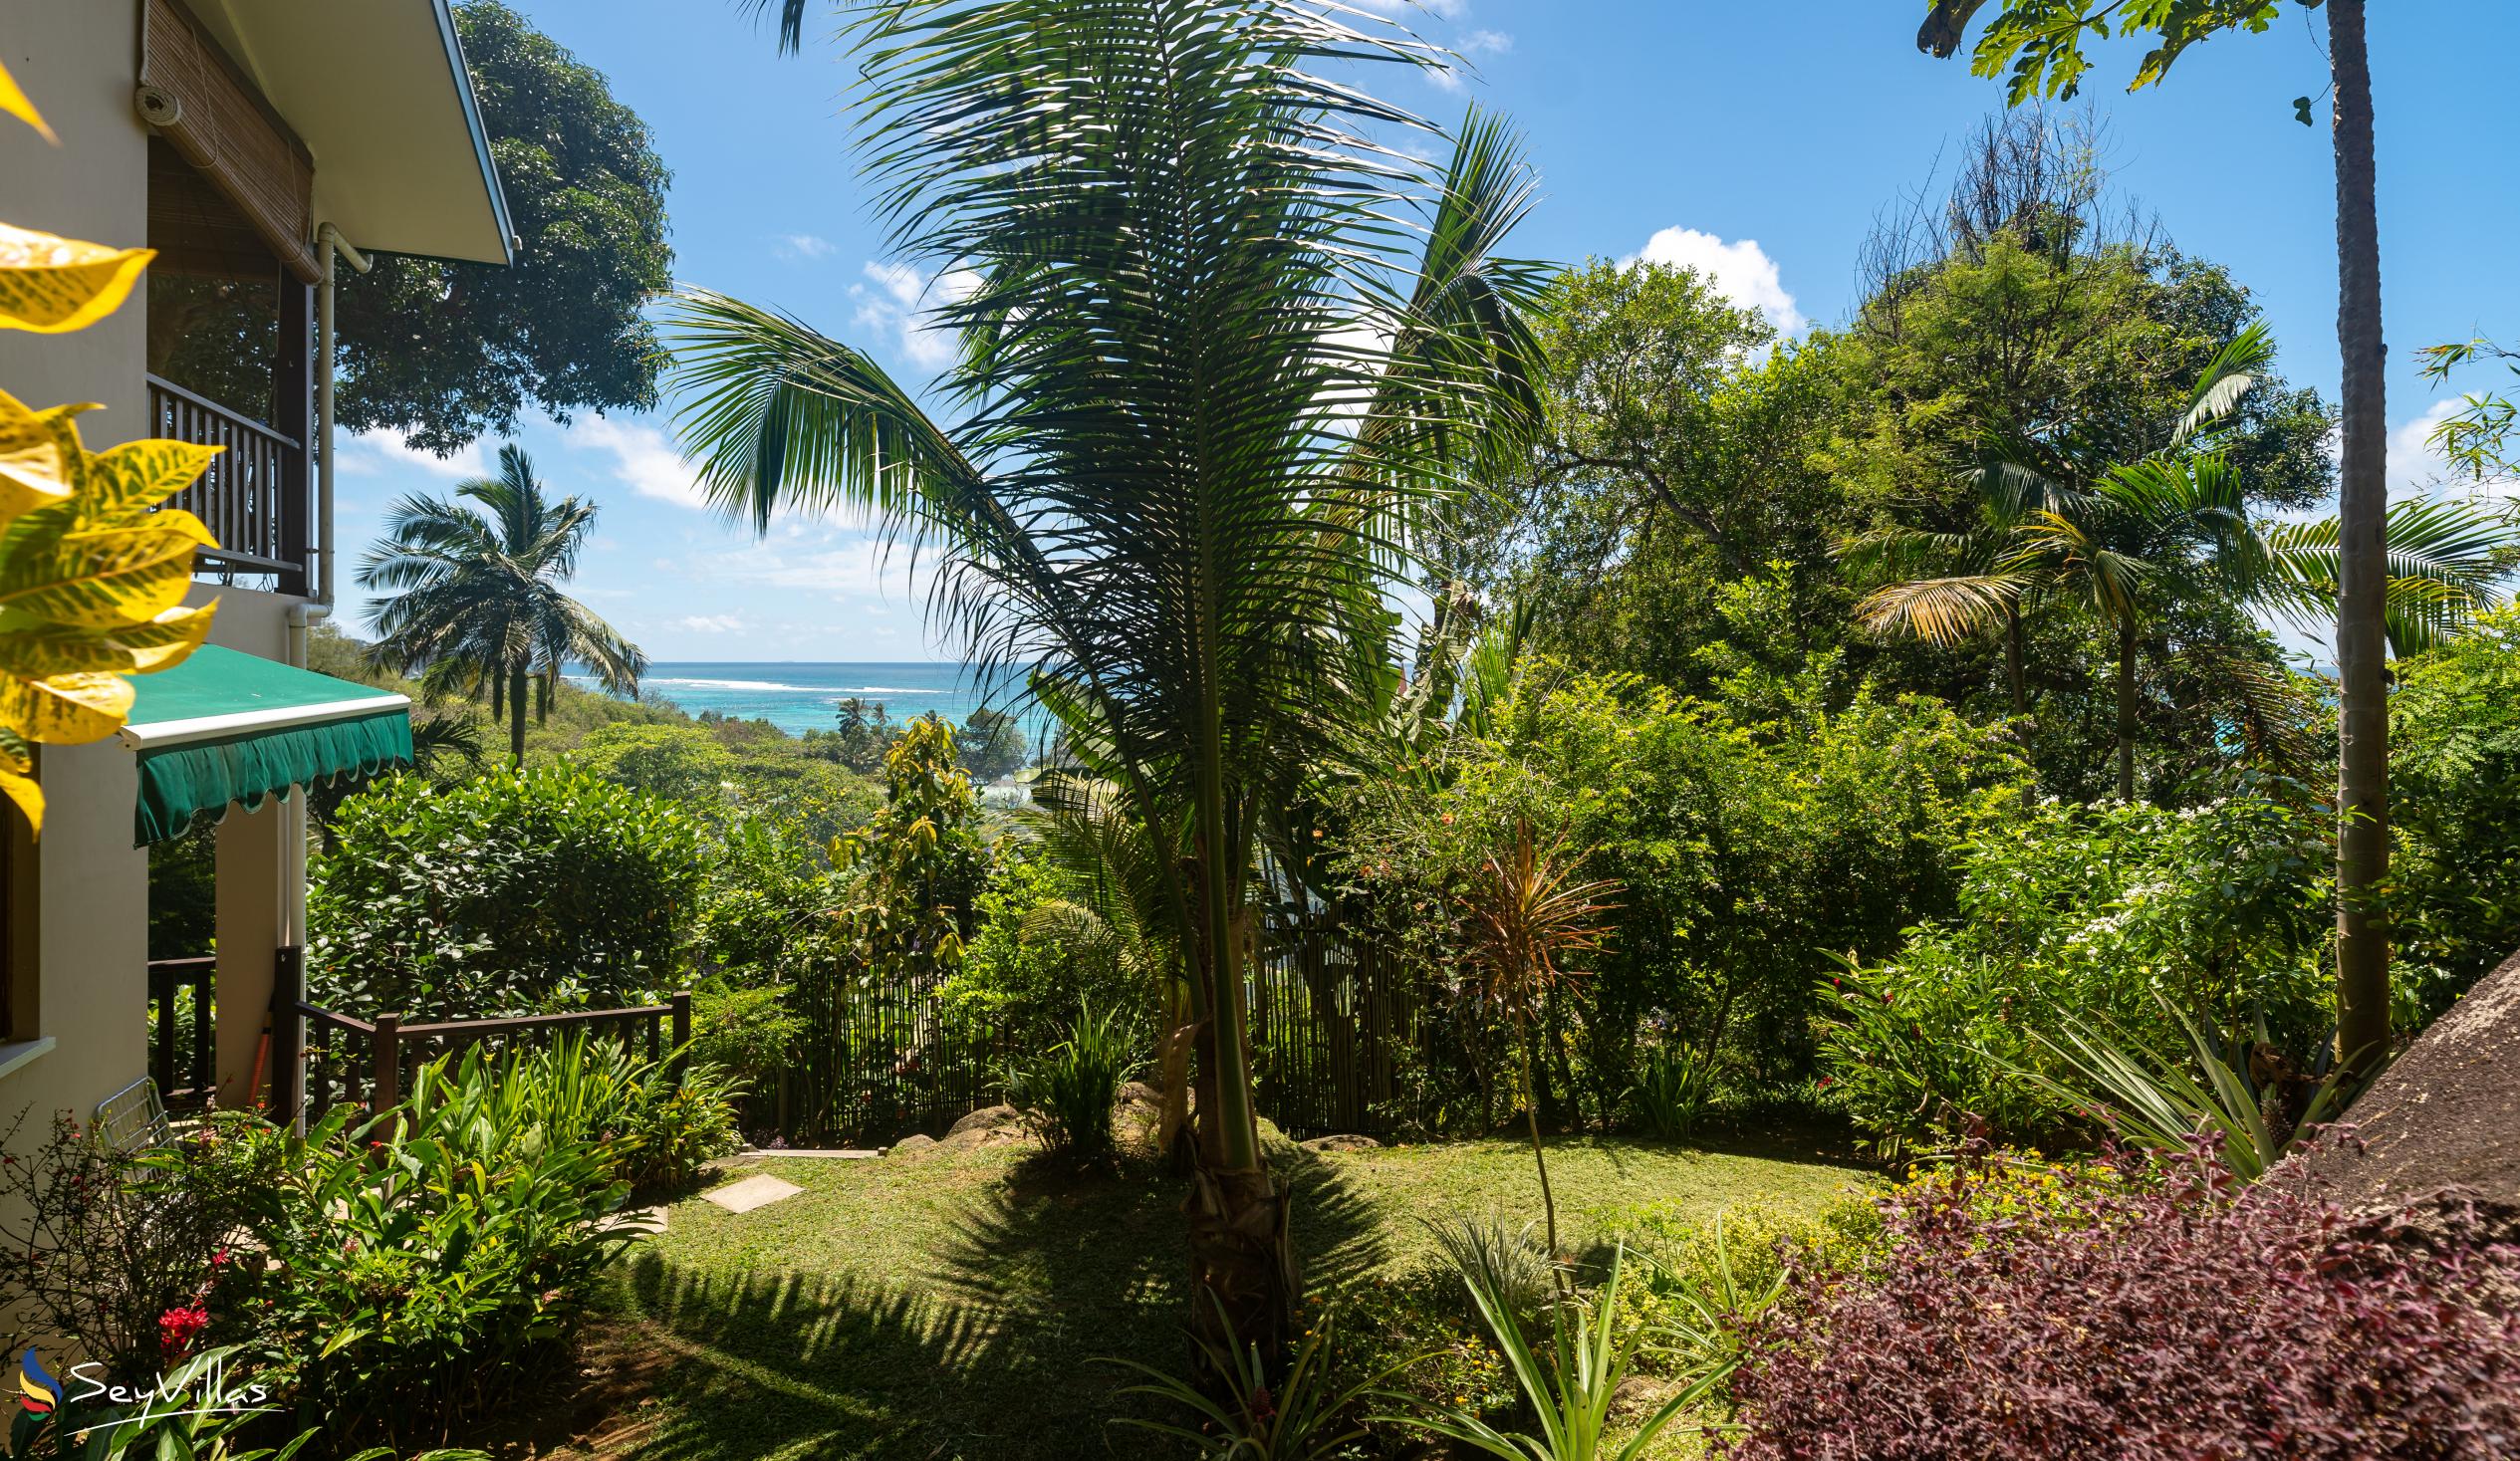 Foto 16: Fler Payanke - Aussenbereich - Mahé (Seychellen)